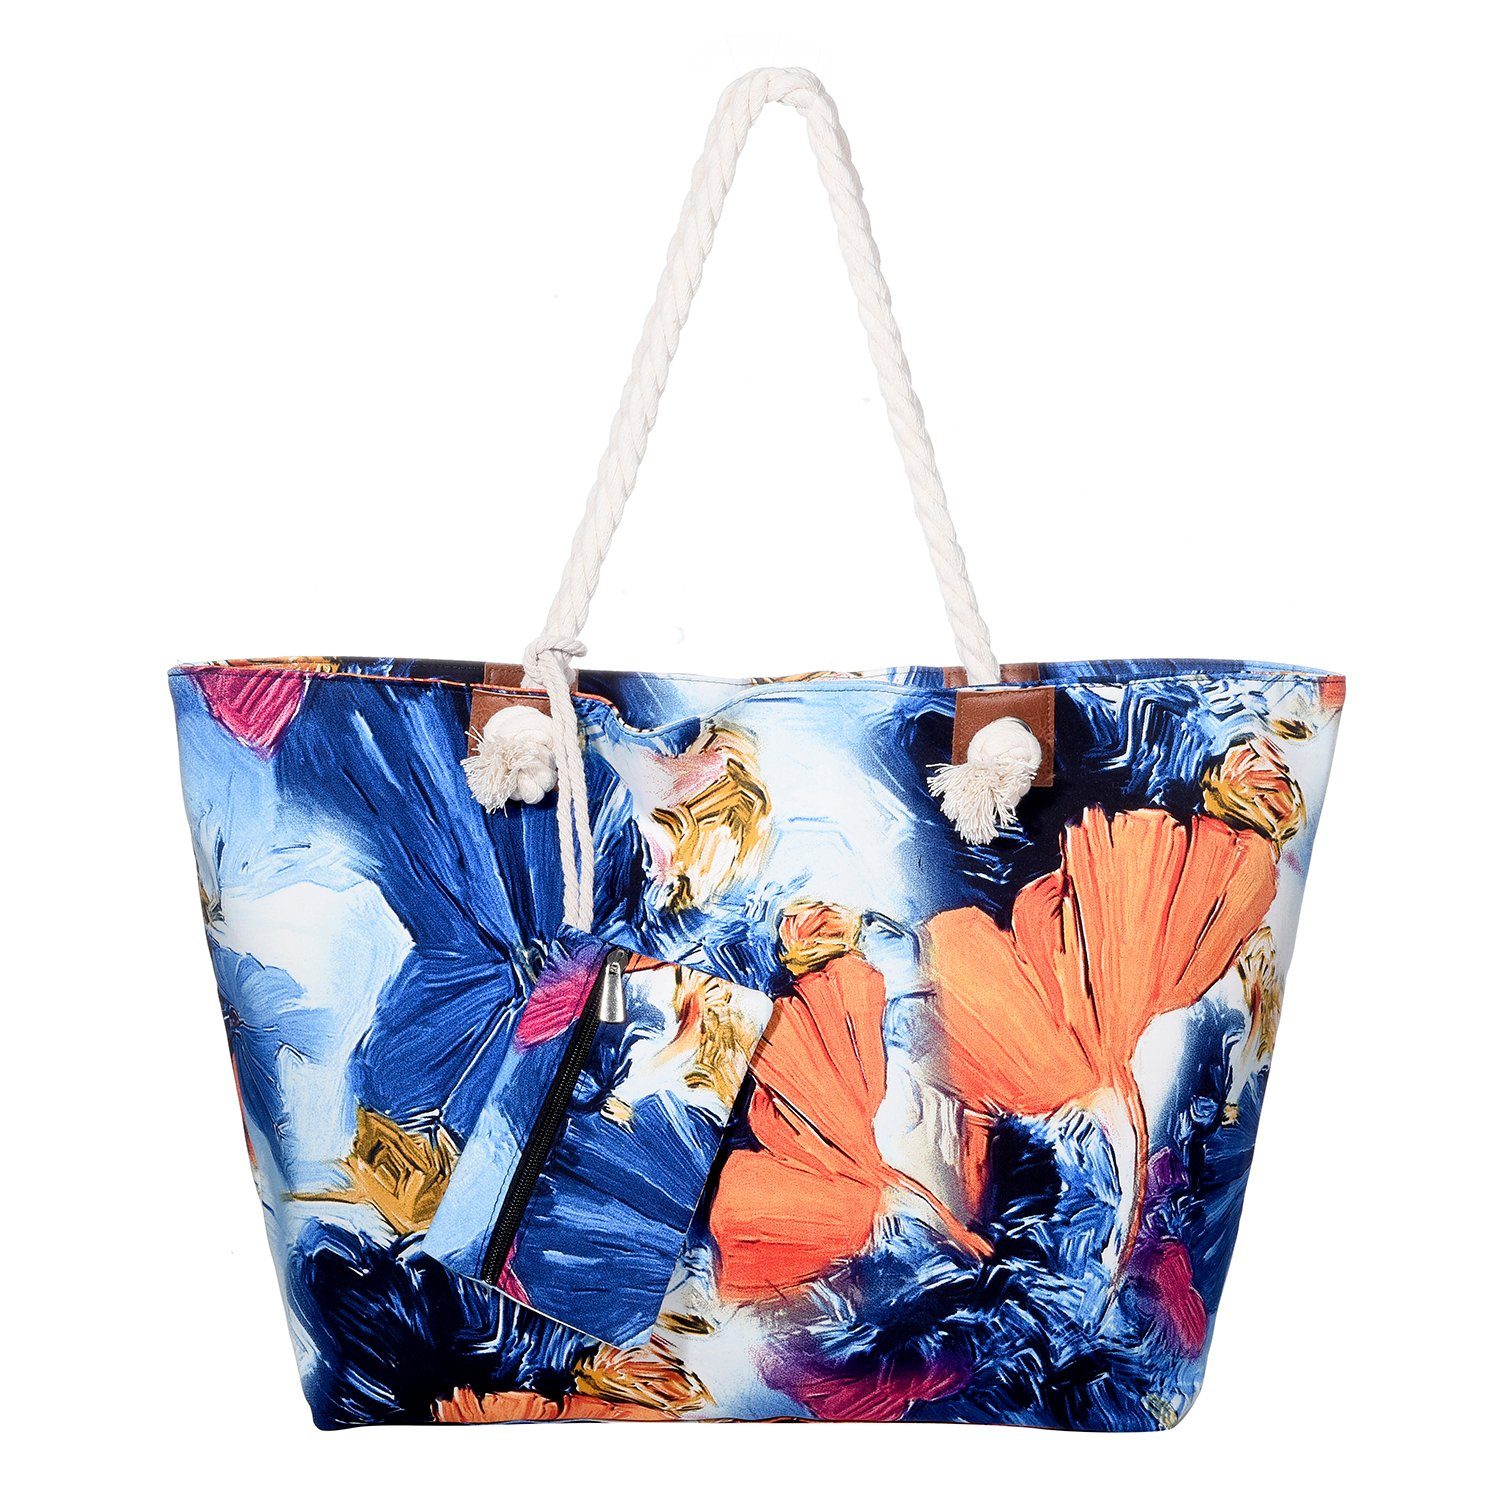 DonDon Strandtasche Shopper wasserabweisende Tasche (2-tlg), Große Strandtasche, mit Reißverschluss, inkl. kleinem Beutel aquarelle world